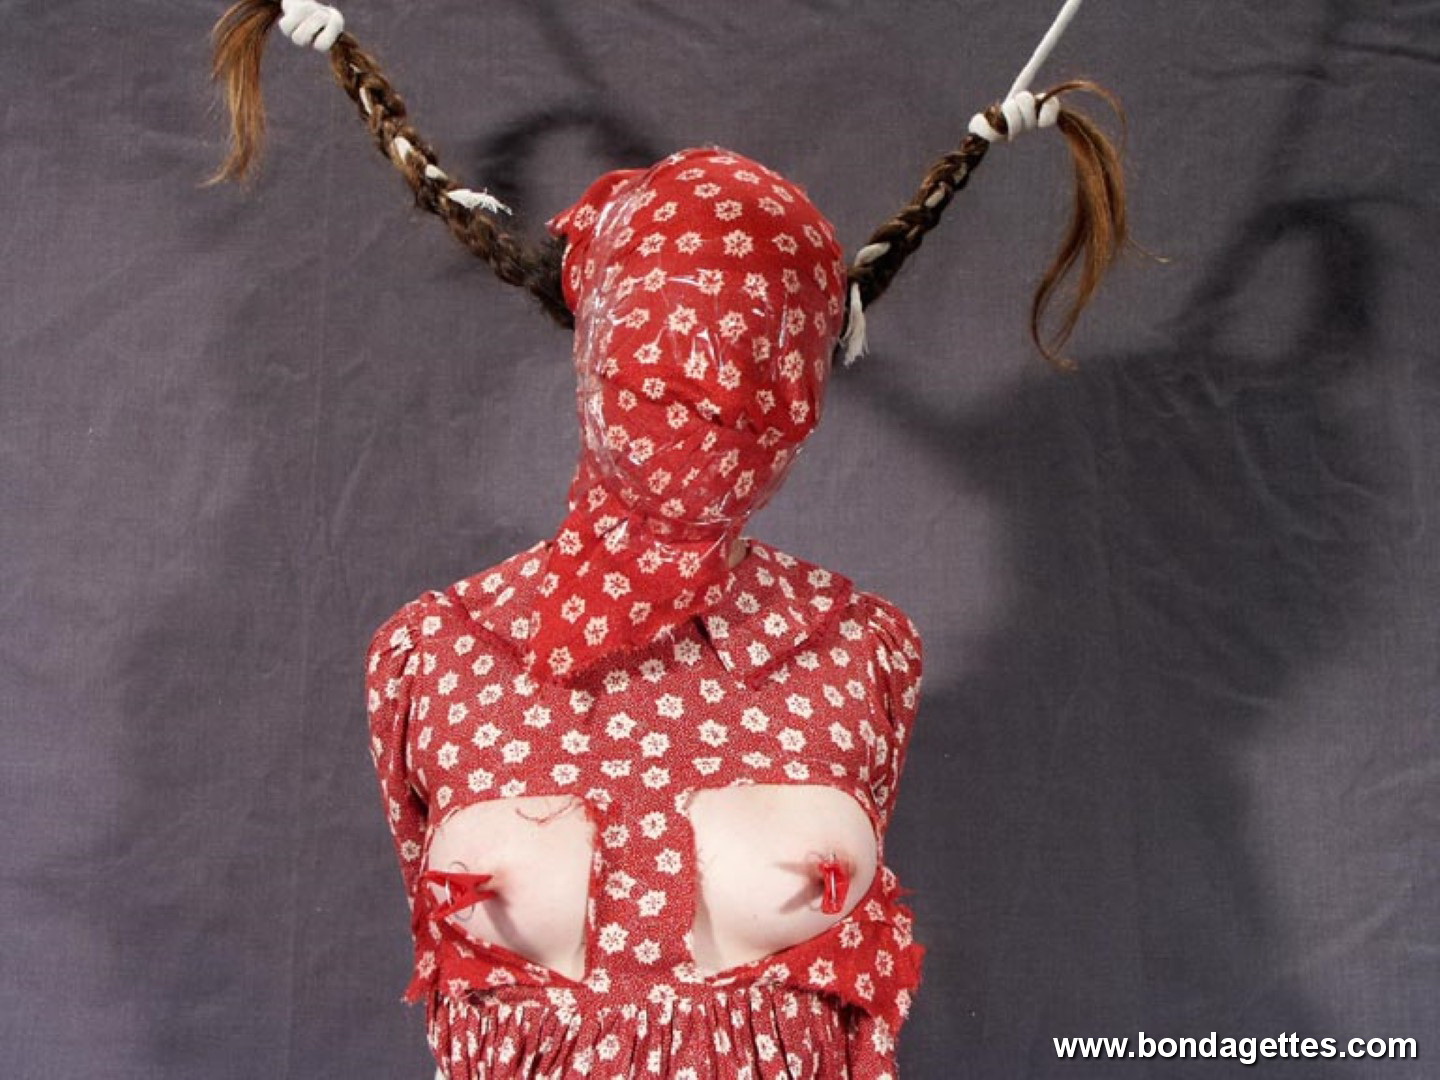 Hot girl in bondage 335